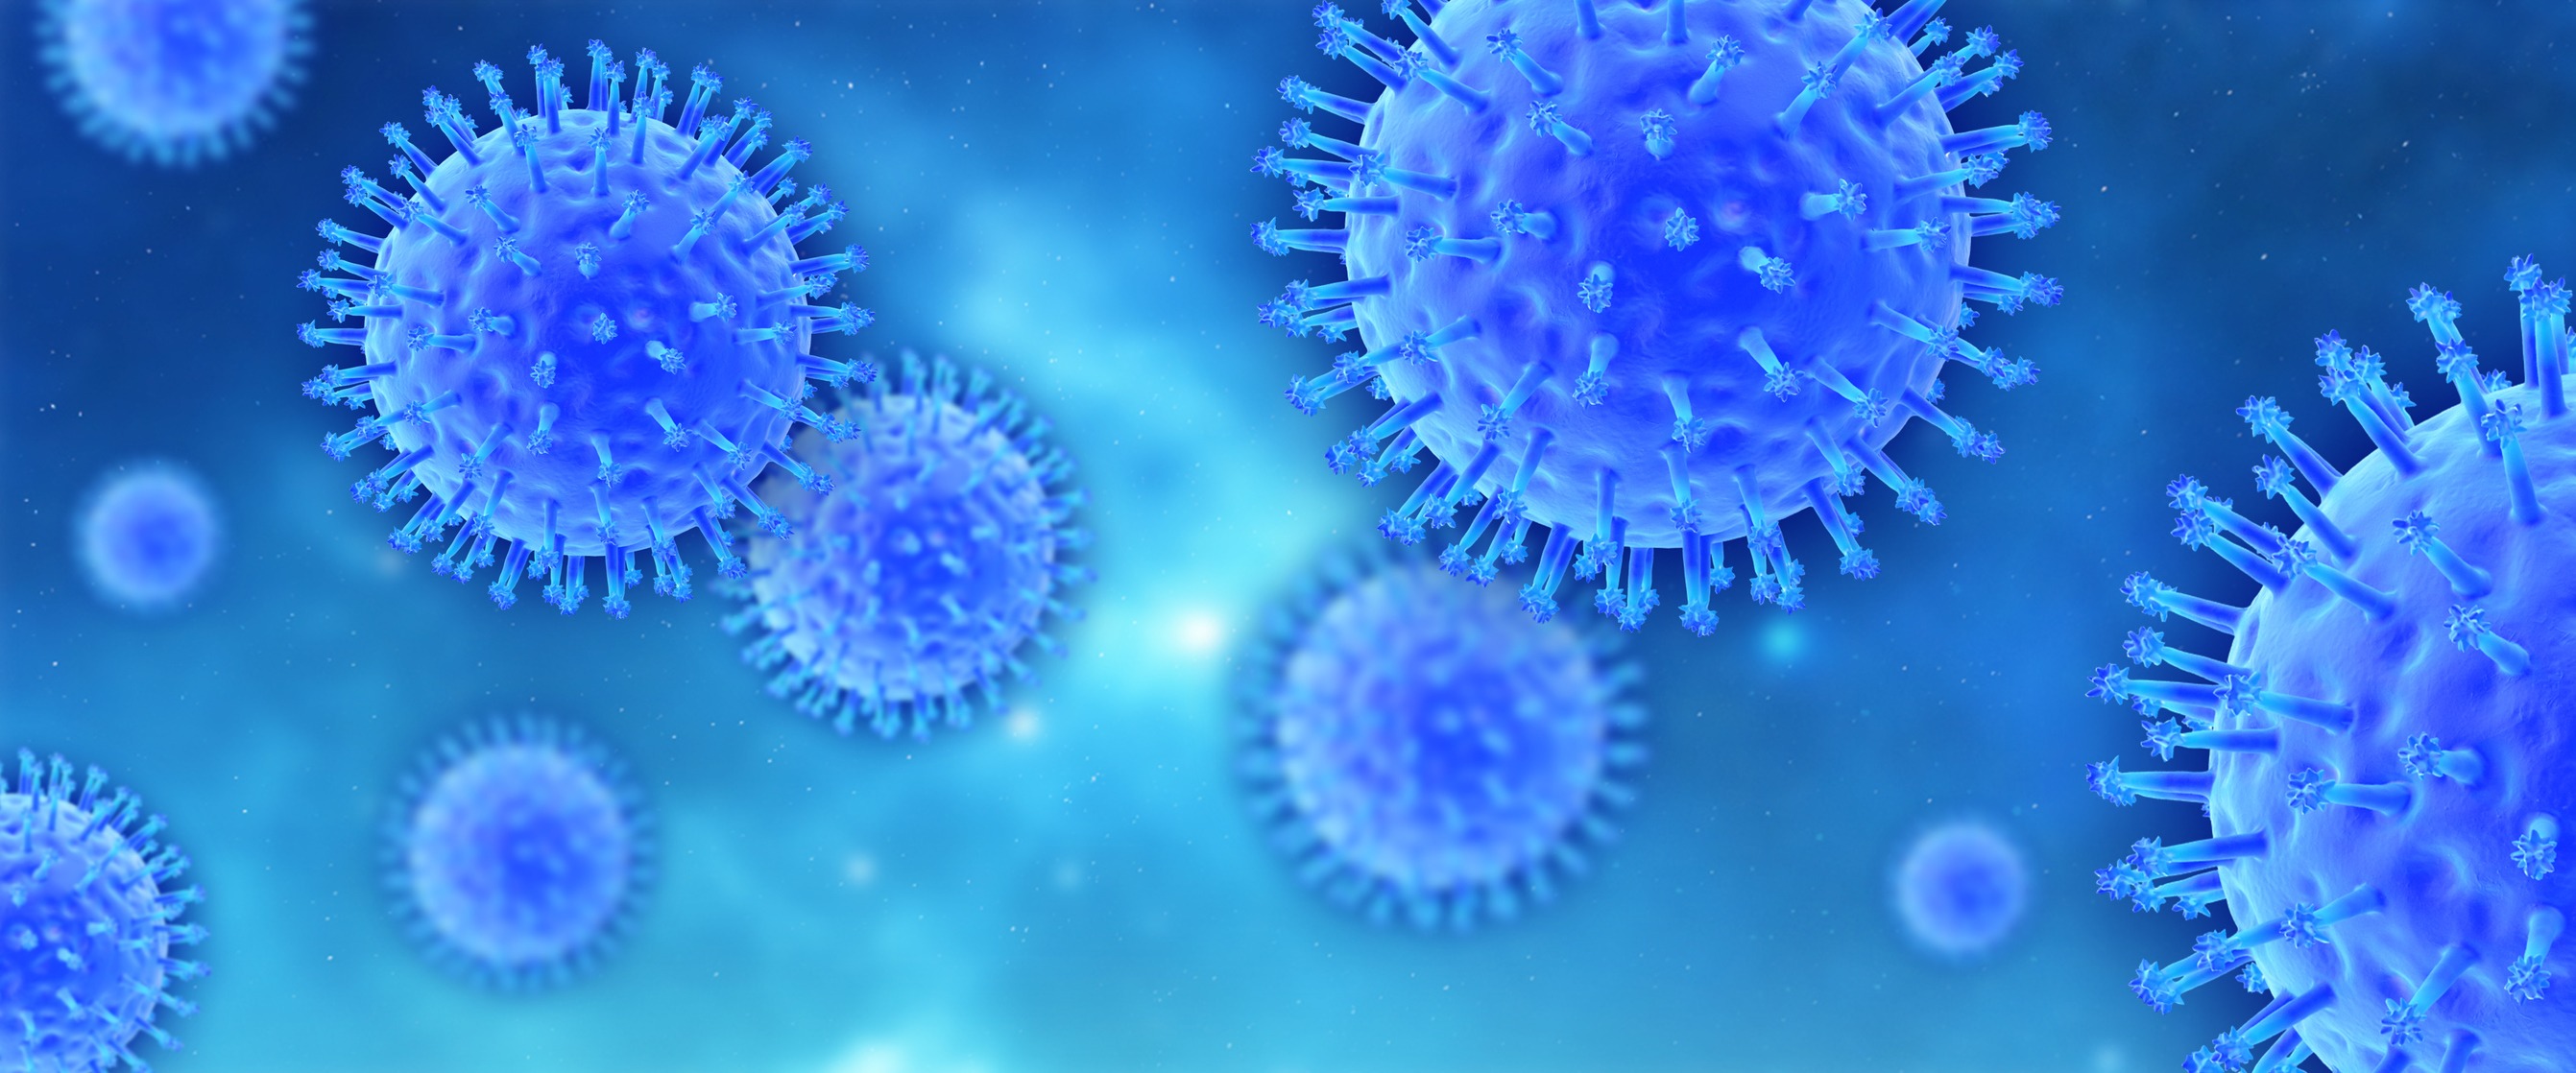 インフルエンザ研究の新展開「唾液」に注目する理由